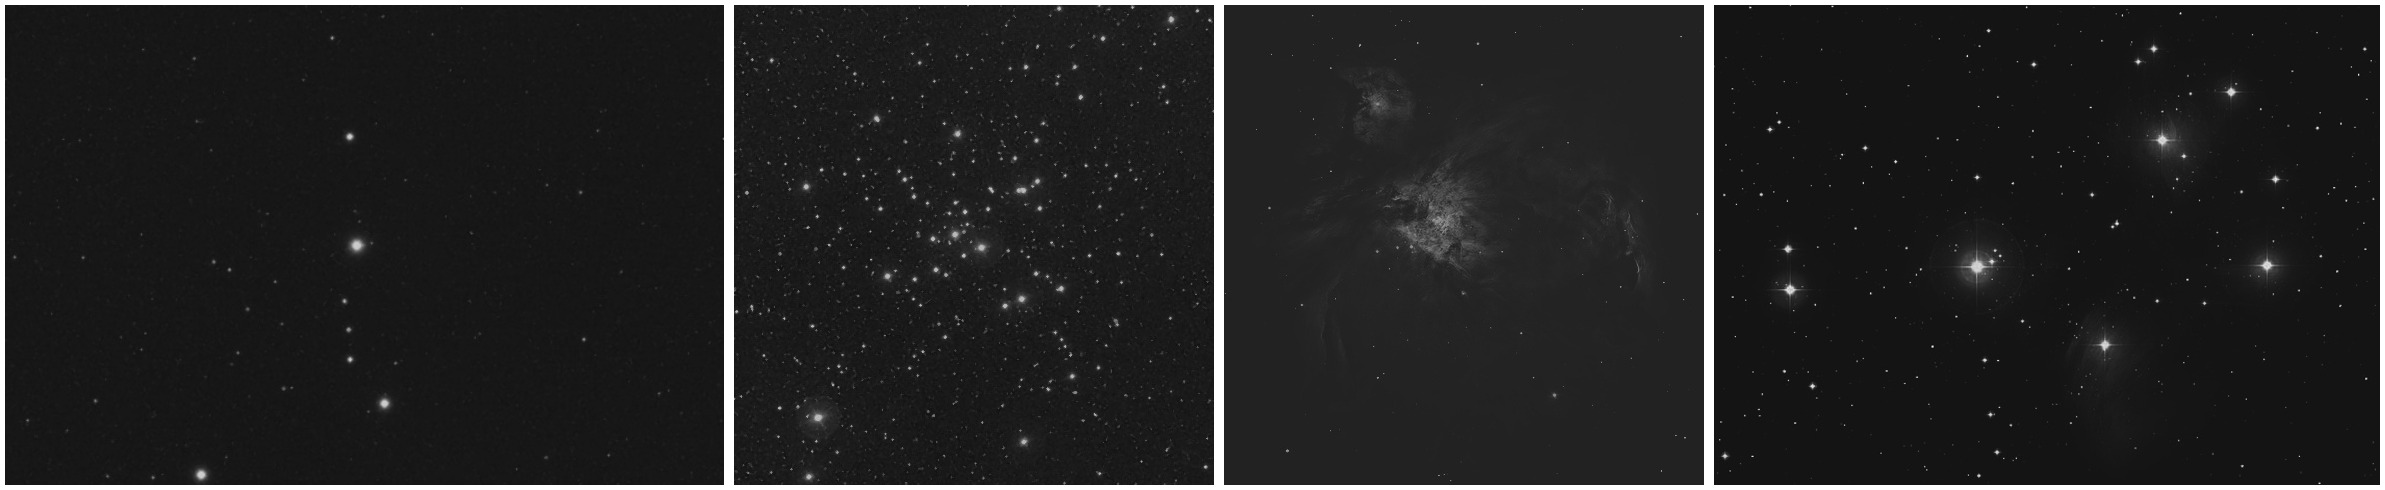 Rielaborazione delle immagini precedenti per mostrare come appaiono al telescopio se osservate visivamente: l'immagine è molto meno contrastata el, salvo casi particolari, le immagini appaiono in bianco e nero.